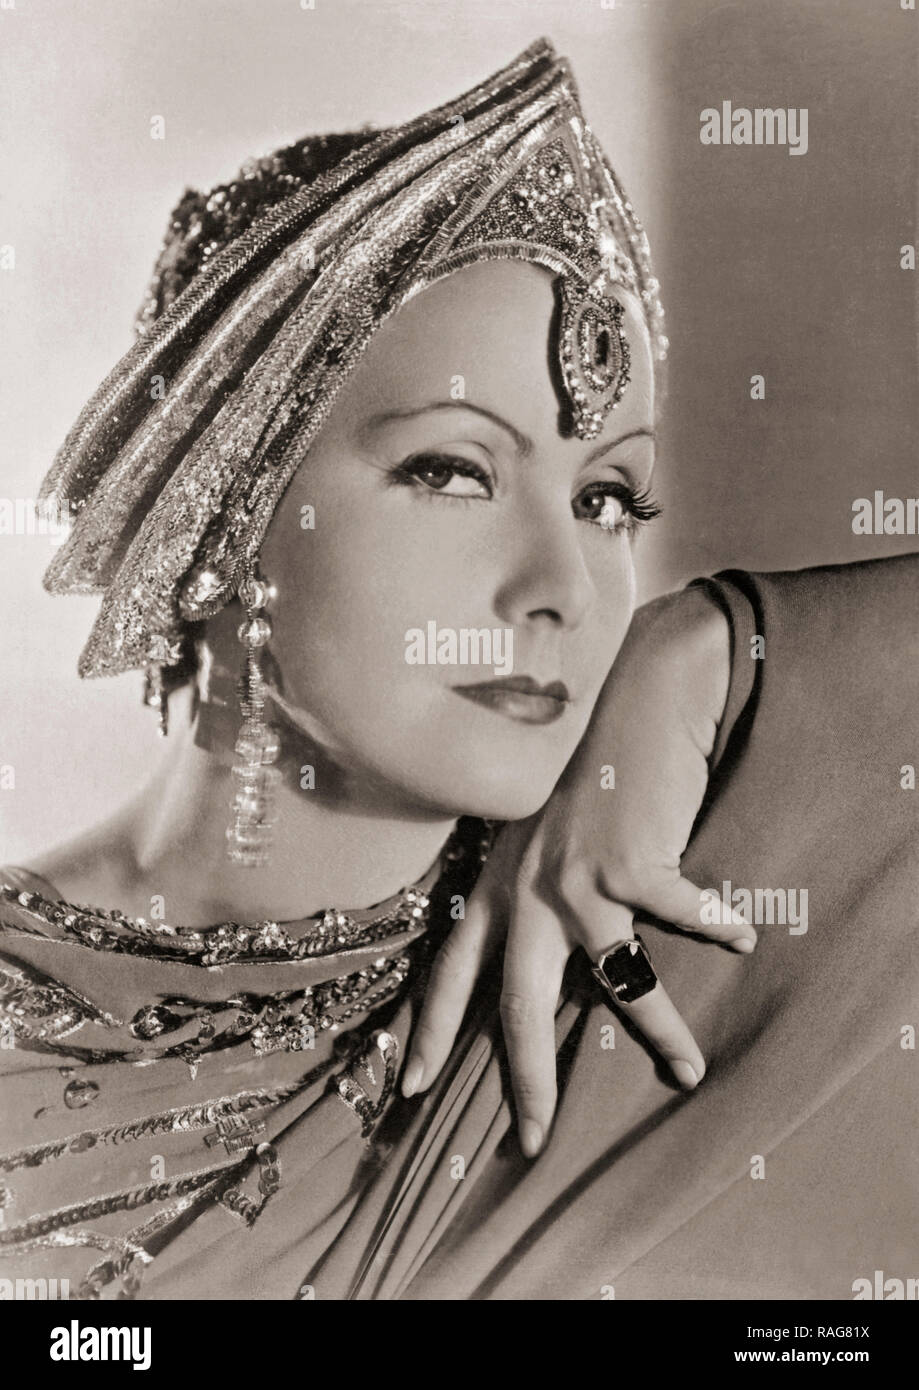 Greta Garbo, 1905-1990. Lo svedese nato attrice che più successivamente ha preso la cittadinanza americana. Questa fotografia mostra il suo in costume per il 1931 Metro-Goldwyn-Mayer produzione di Mata Hari. Foto Stock